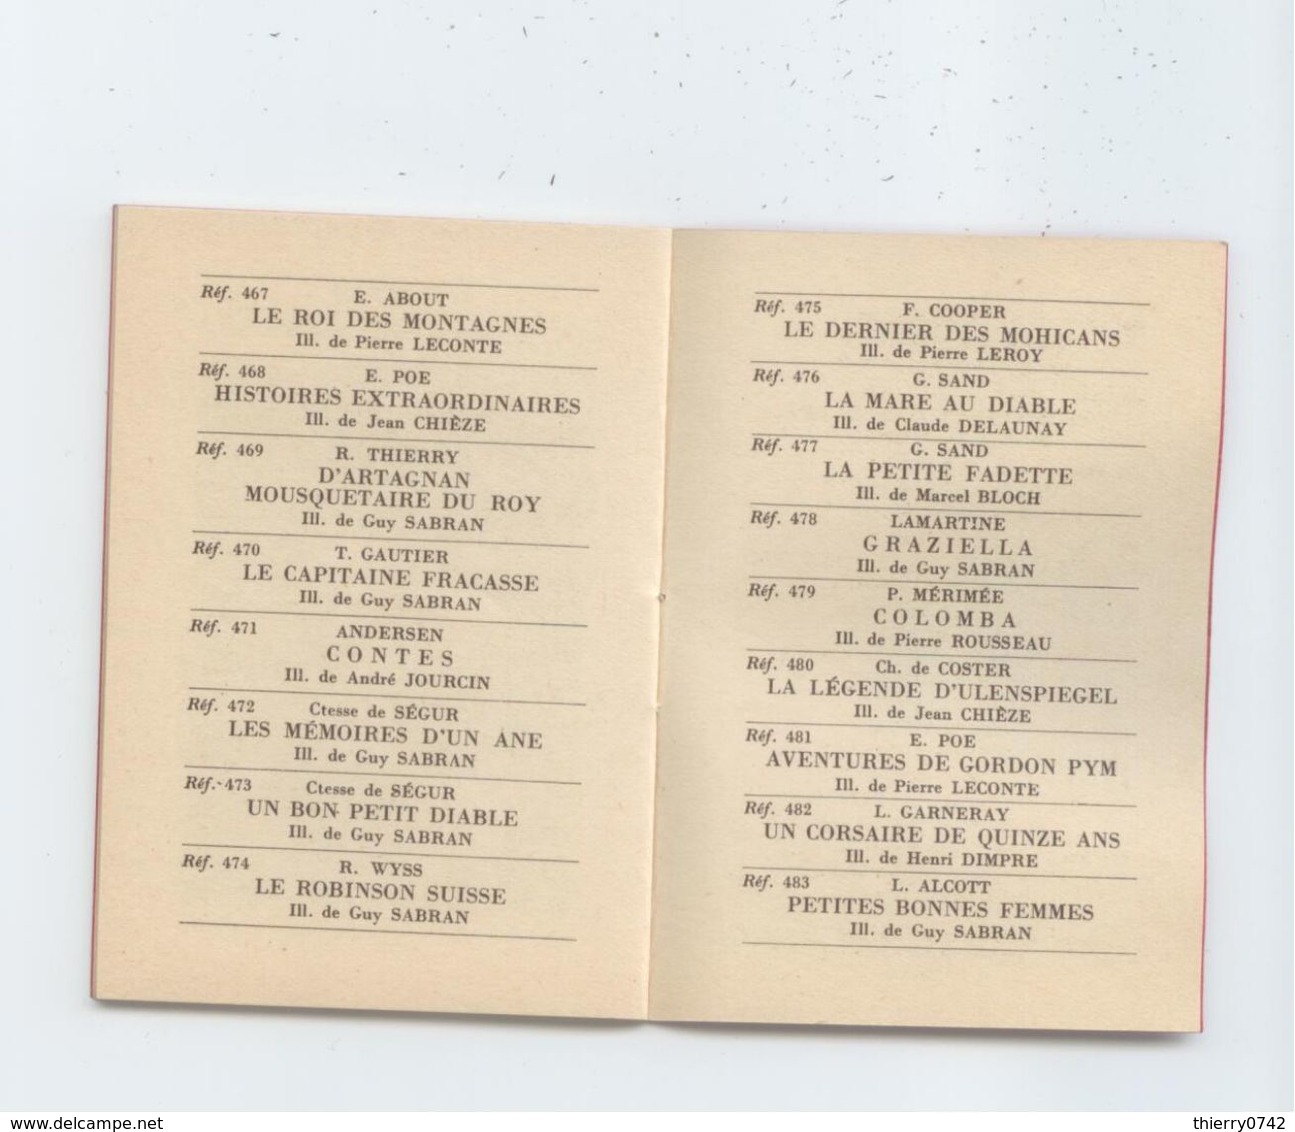 SUPERBE CALENDRIER 1951 LIBRAIRIE HACHETTE ST ETIENNE LOIRE BIBLIOTHEQUE ROUGE ET OR ETAT PARFAIT COLLECTOR